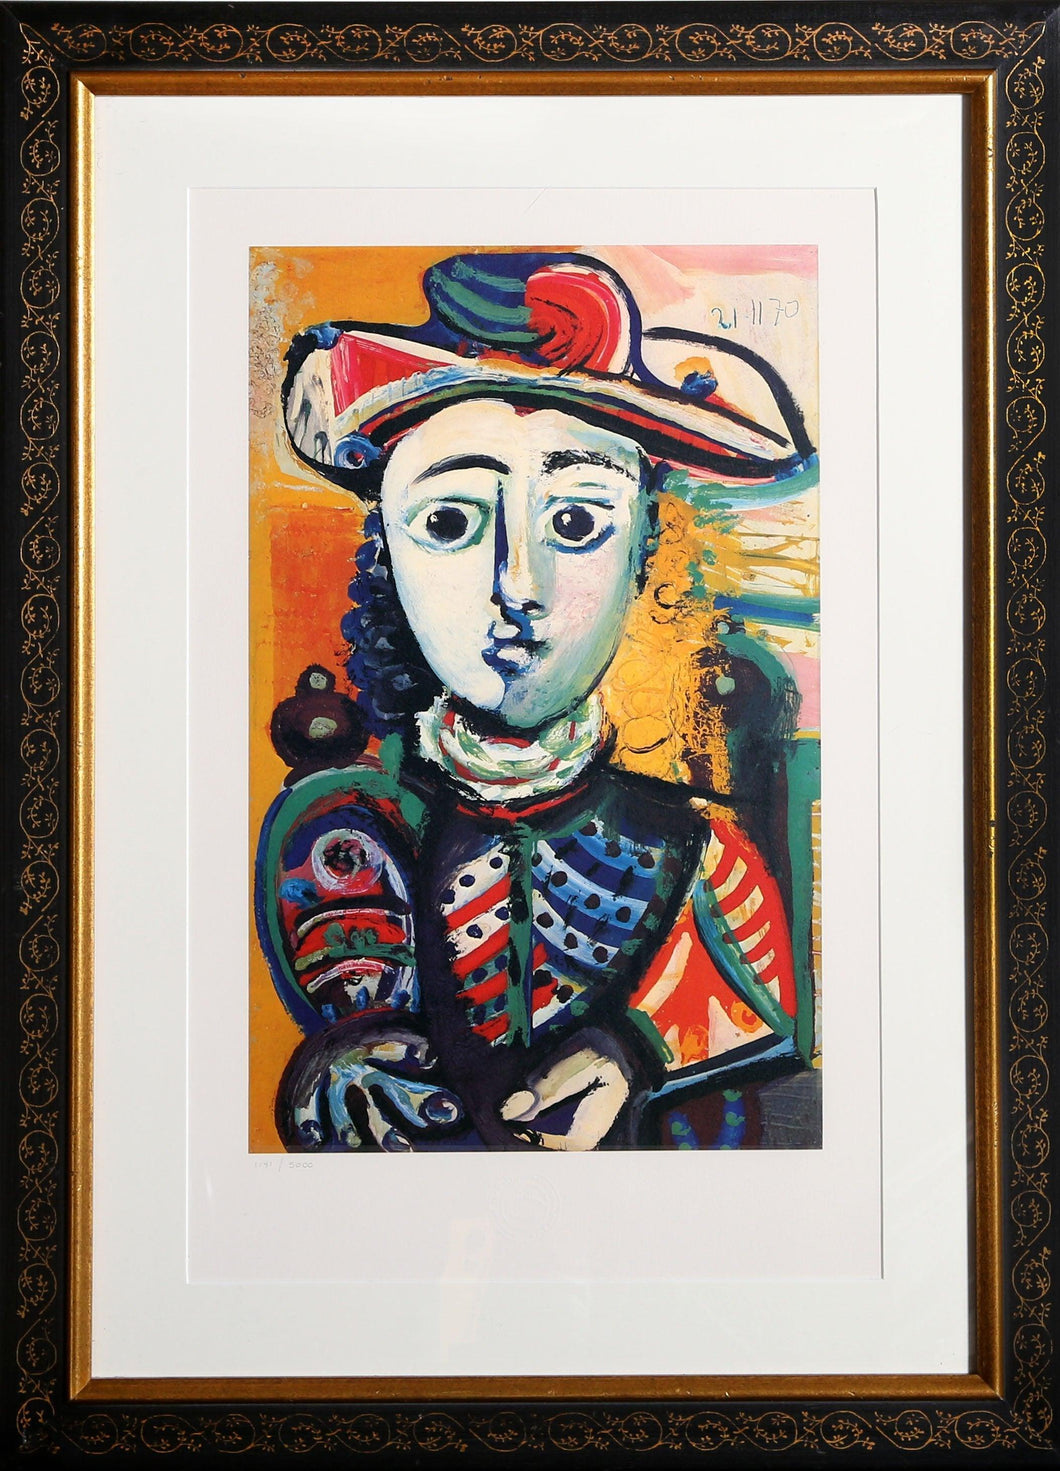 Jeune Femme Assise dans un Fauteuil Lithograph | Pablo Picasso,{{product.type}}